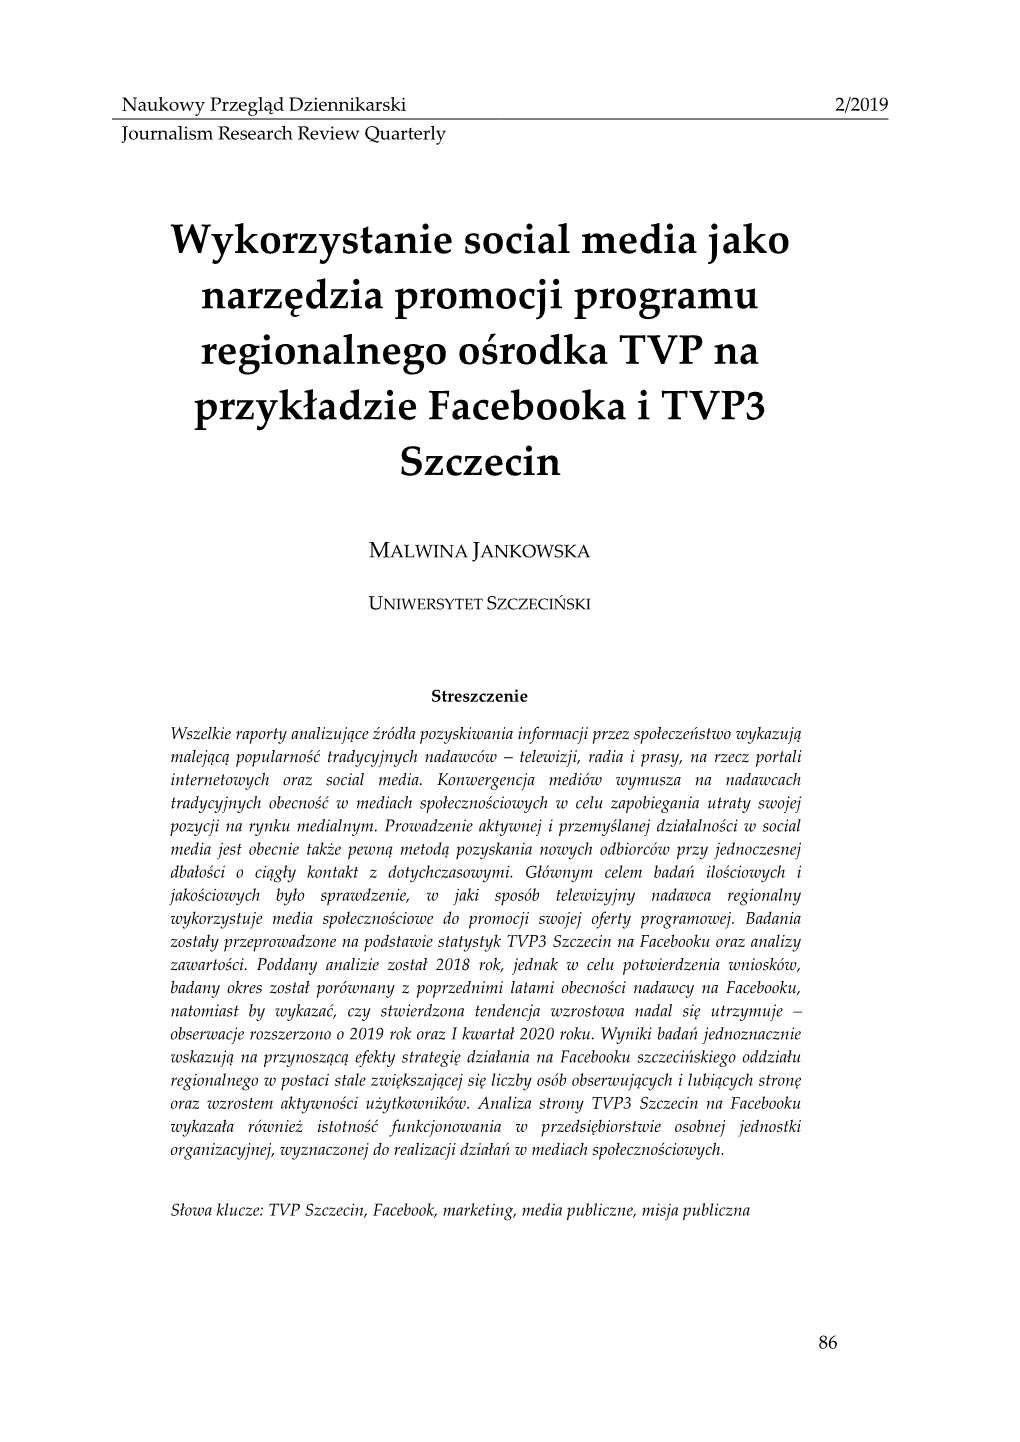 Wykorzystanie Social Media Jako Narzędzia Promocji Programu Regionalnego Ośrodka TVP Na Przykładzie Facebooka I TVP3 Szczecin